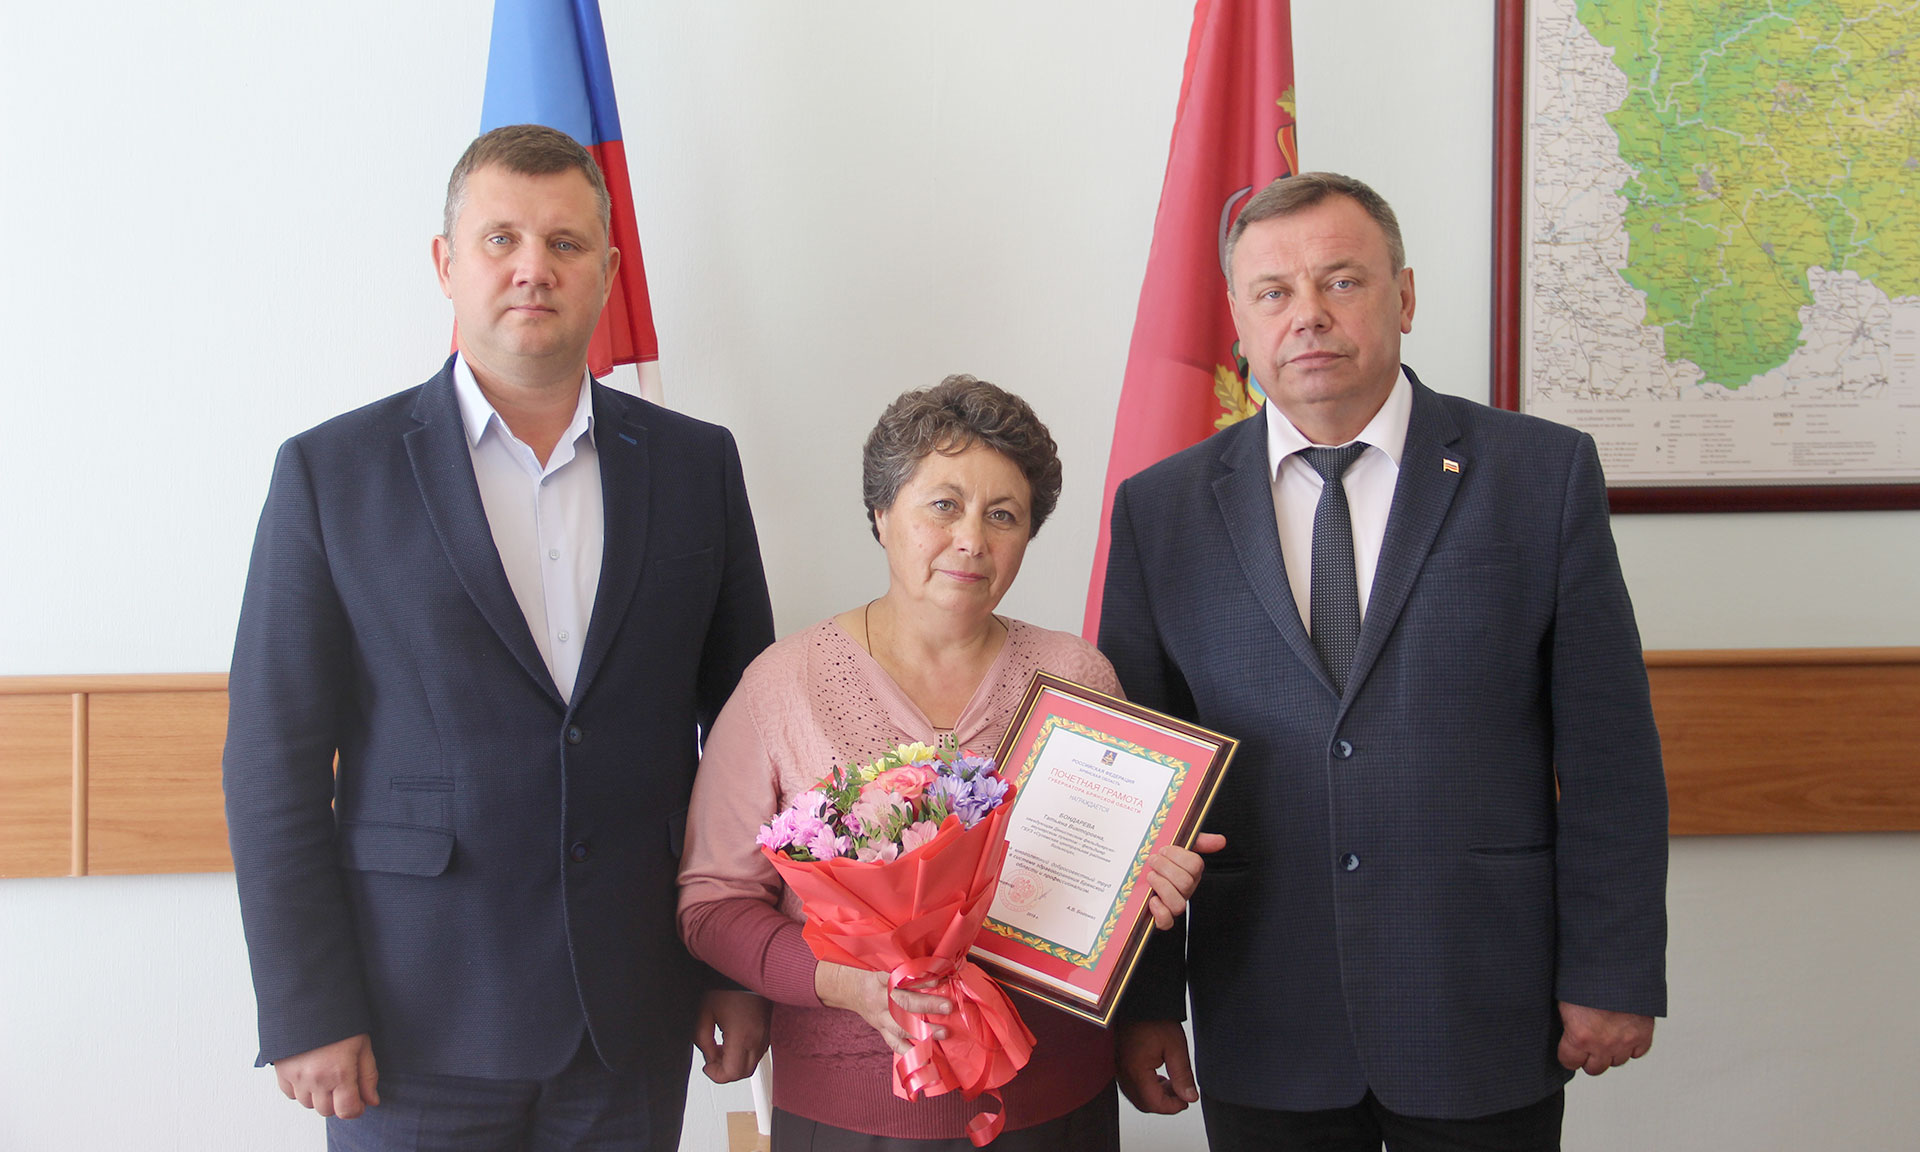 Заведующую ФАПа Суземского района Татьяну Бондареву наградили за достойный труд